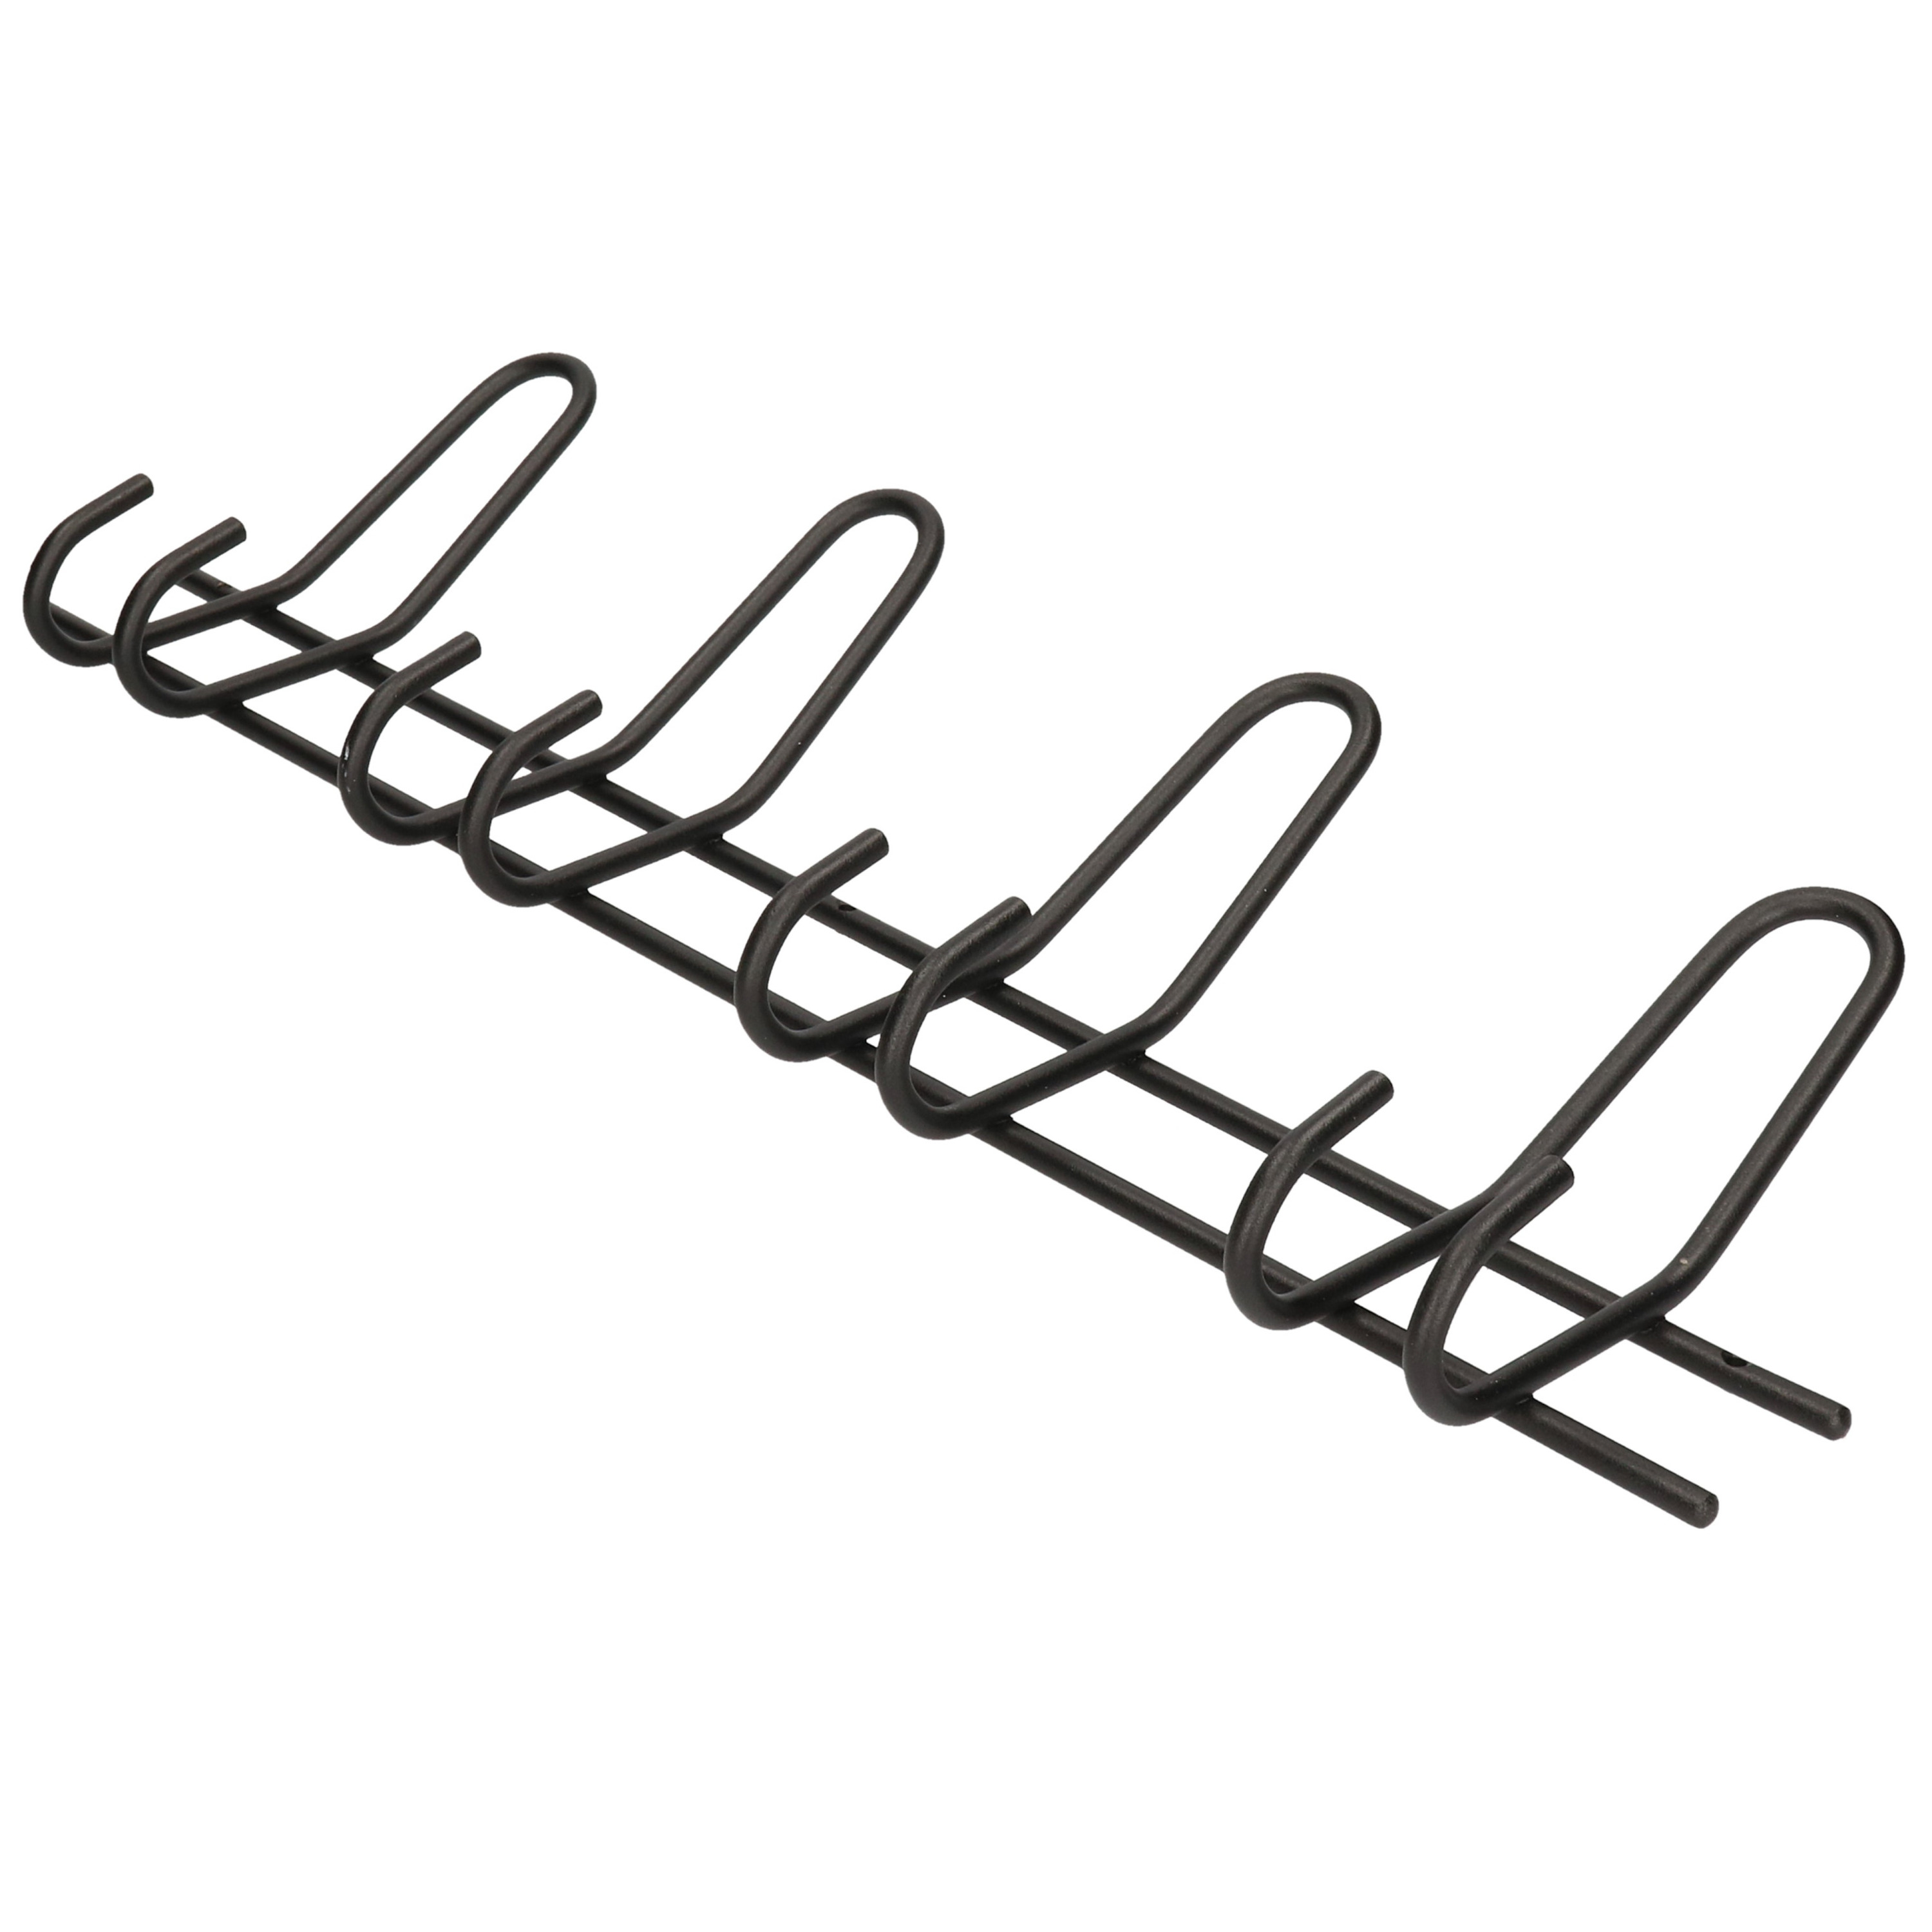 1x Zwarte garderobekapstokken-jashaken-wandkapstokken metalen kapstok met 4x dubbele brede haak 16 x